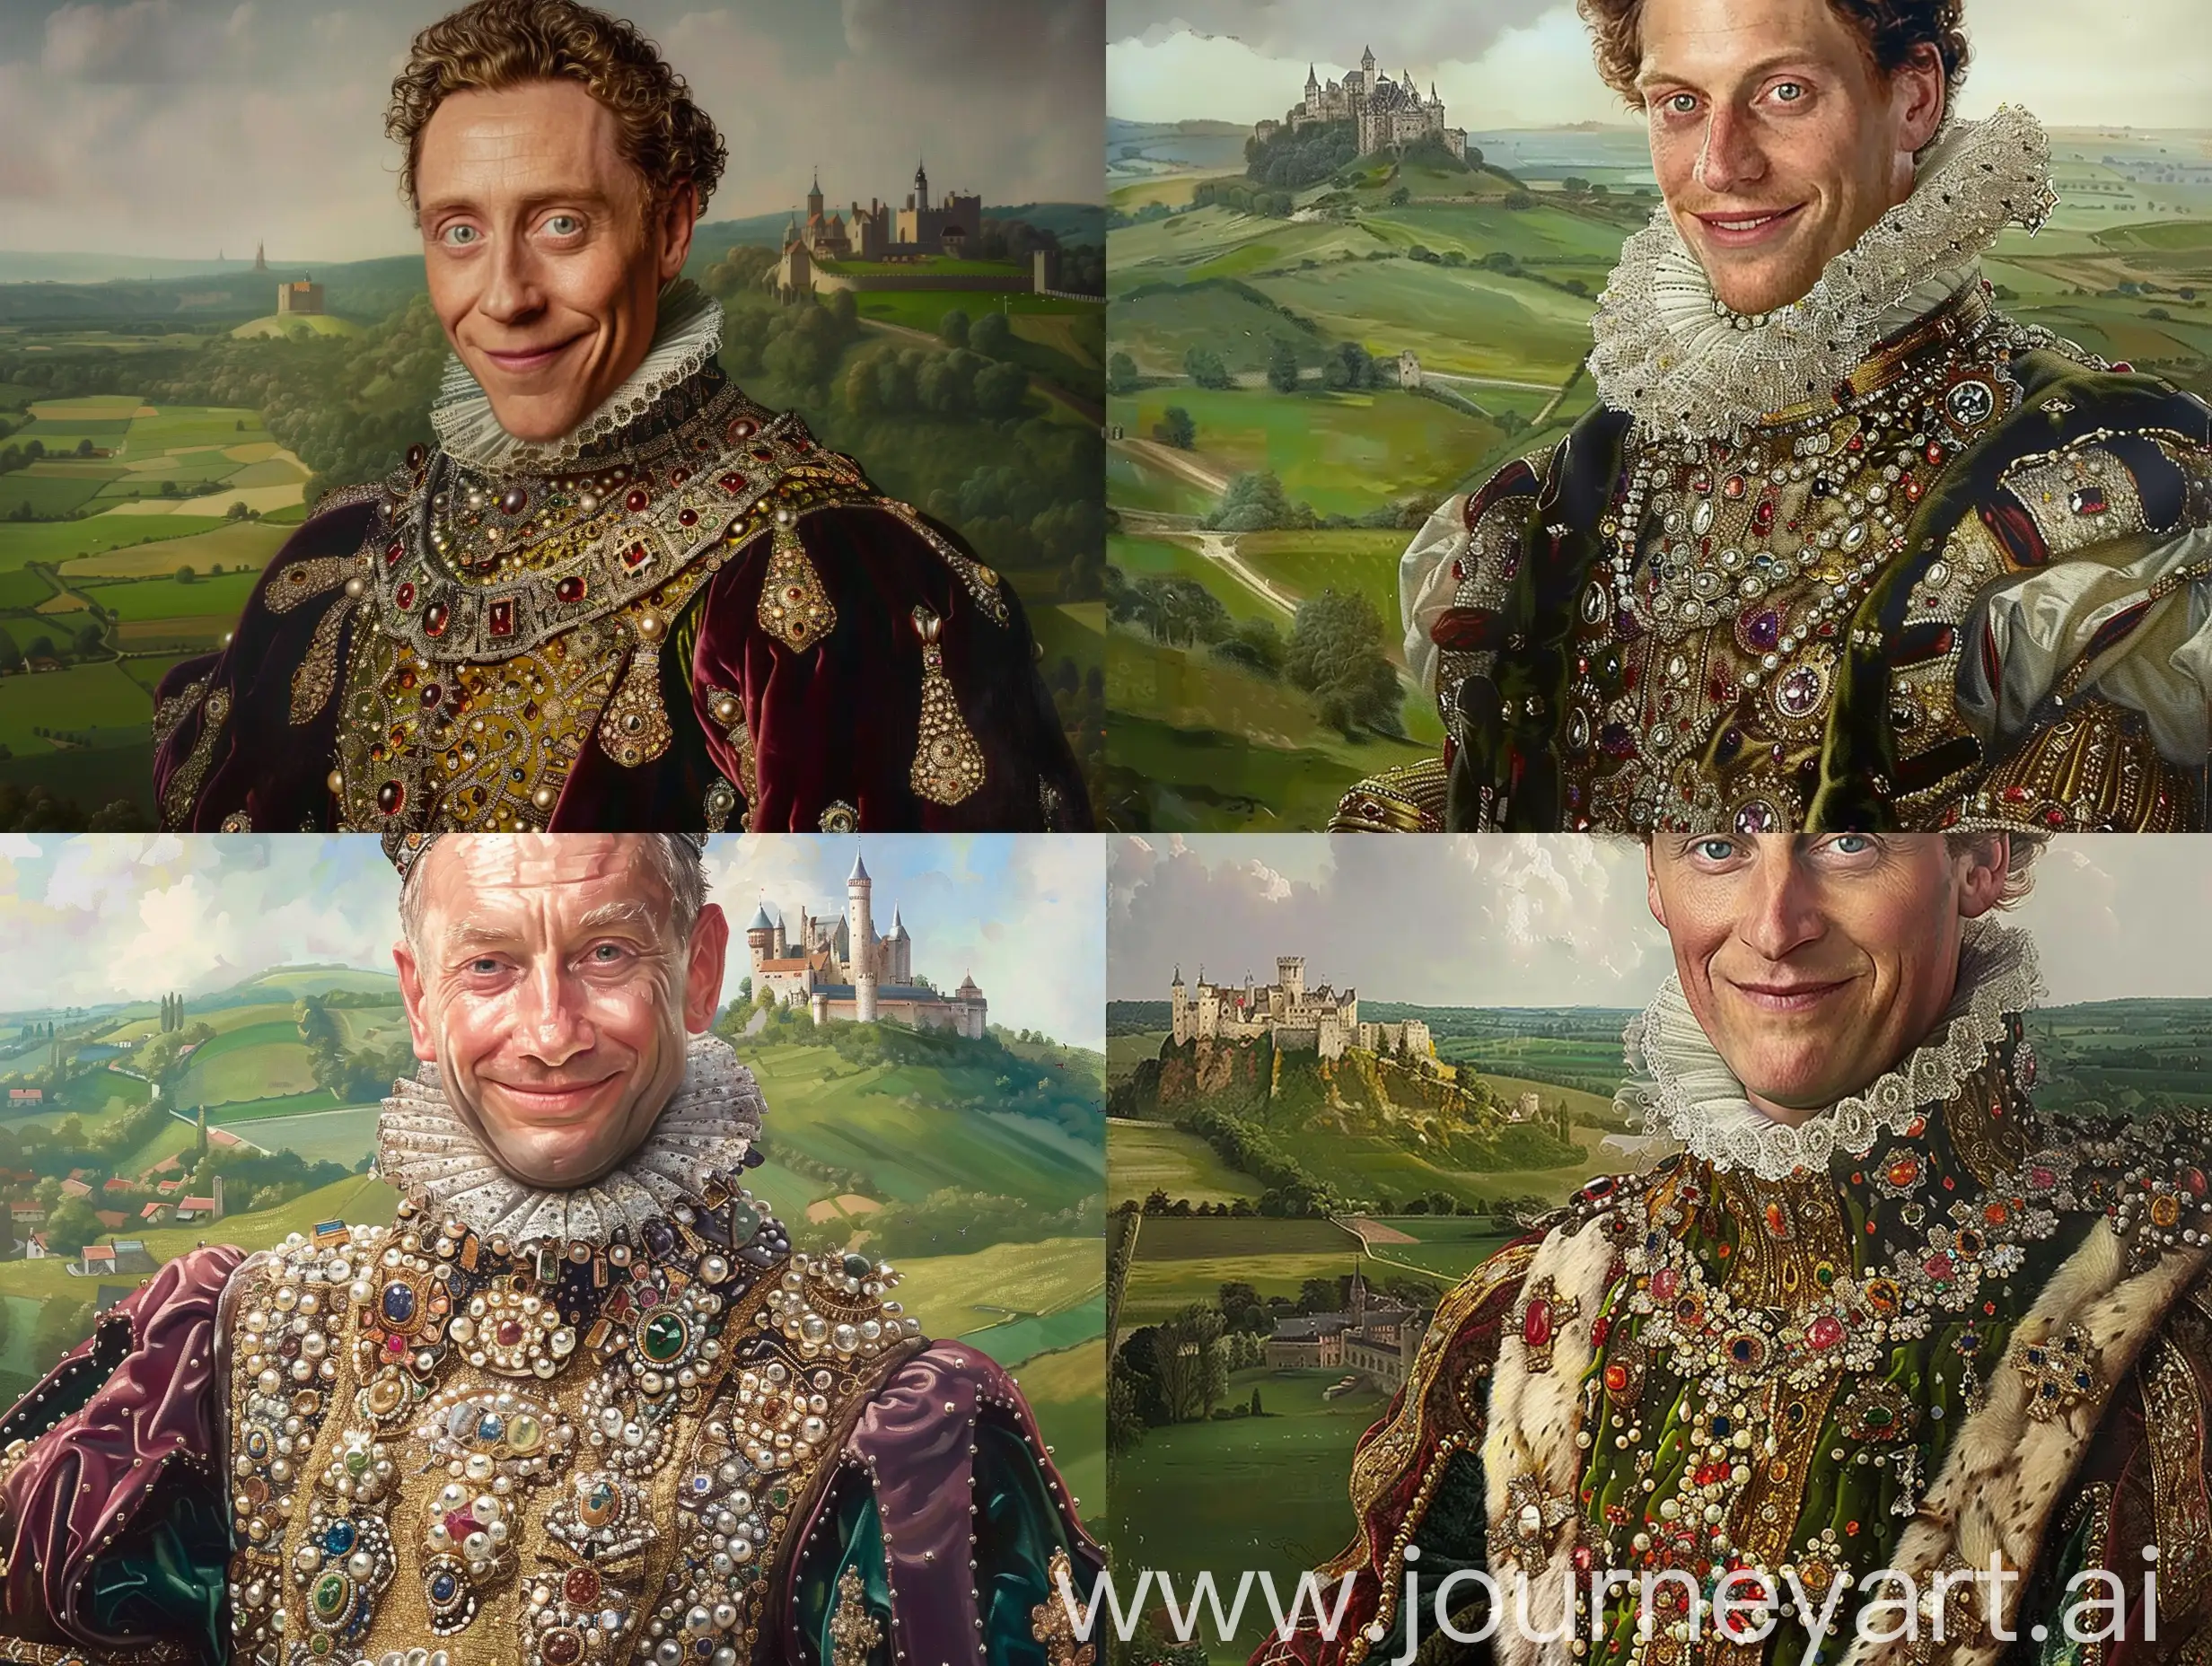 Regal-Portrait-of-King-Henry-VIII-in-JewelAdorned-Velvet-Costume